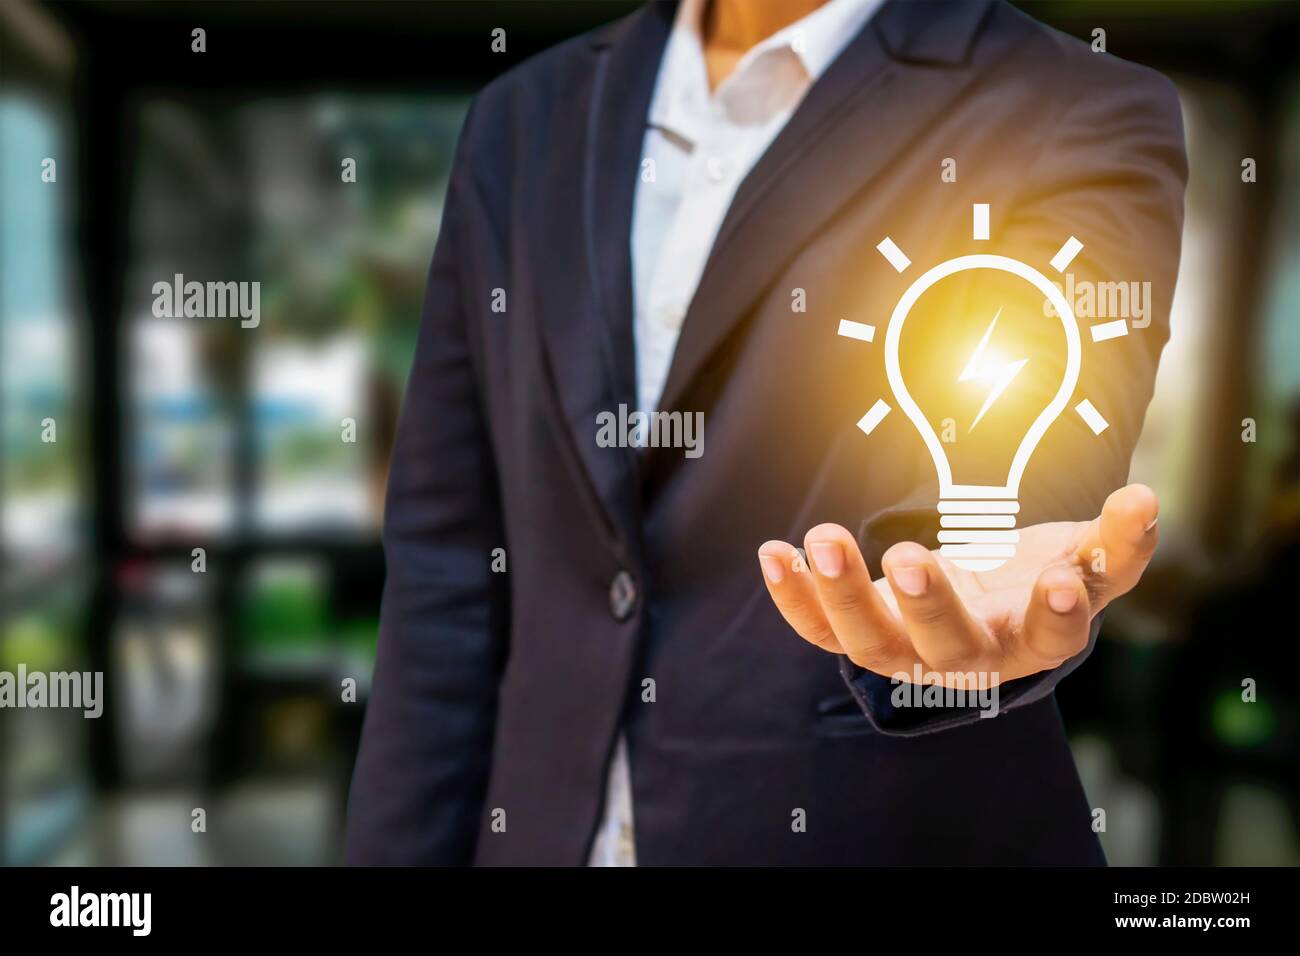 Les gens d'affaires ont des ampoules et des ampoules à économie d'énergie pour des idées et des concepts d'économie d'énergie et de succès. Banque D'Images